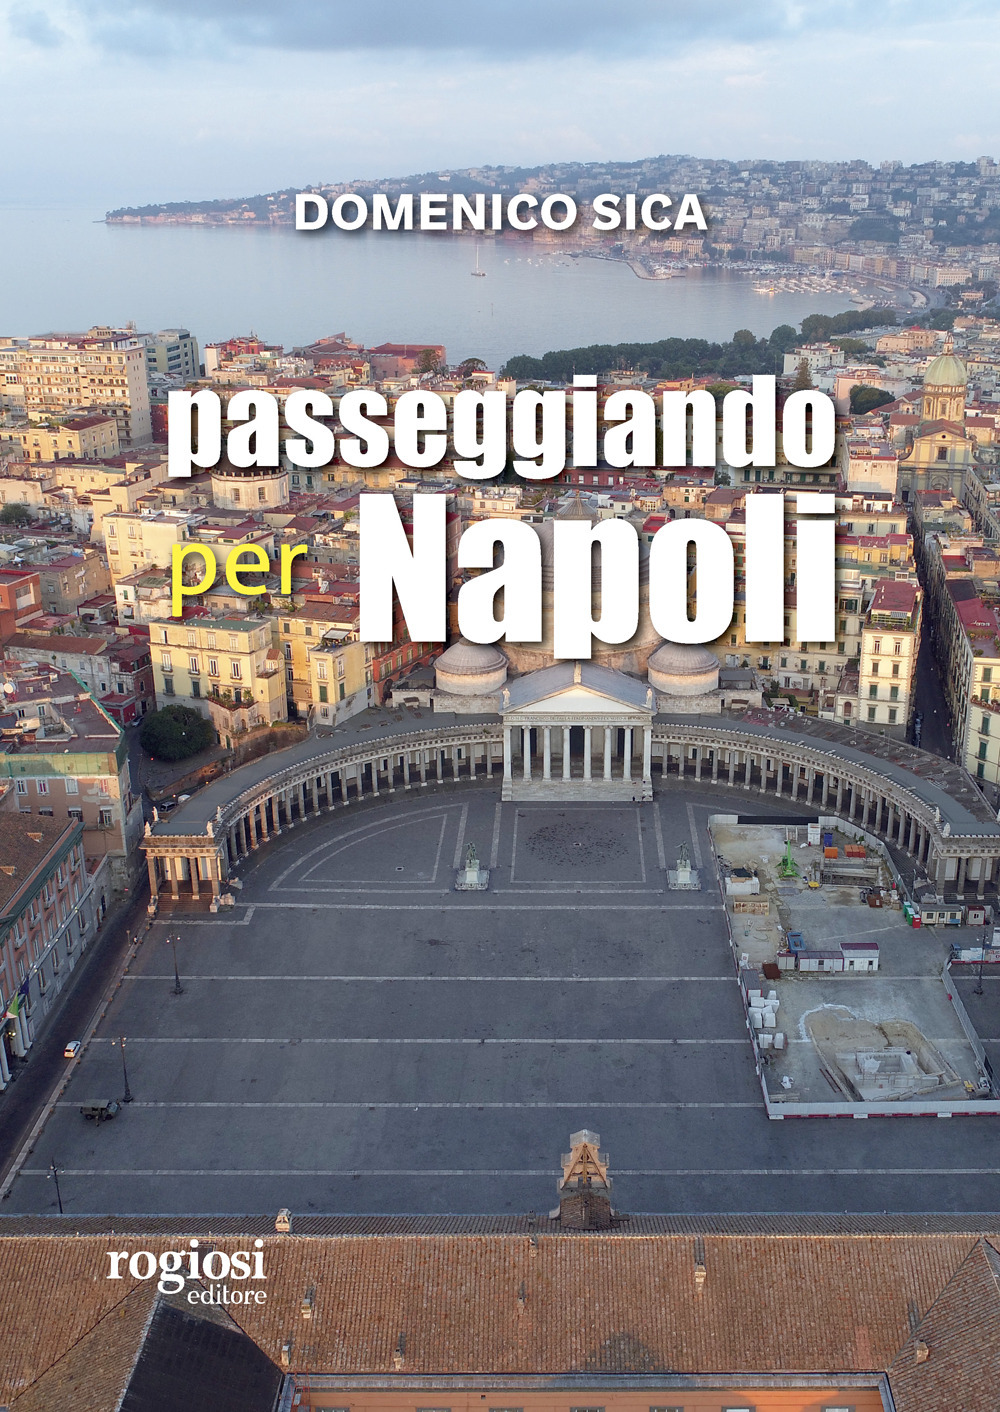 Passeggiando per Napoli